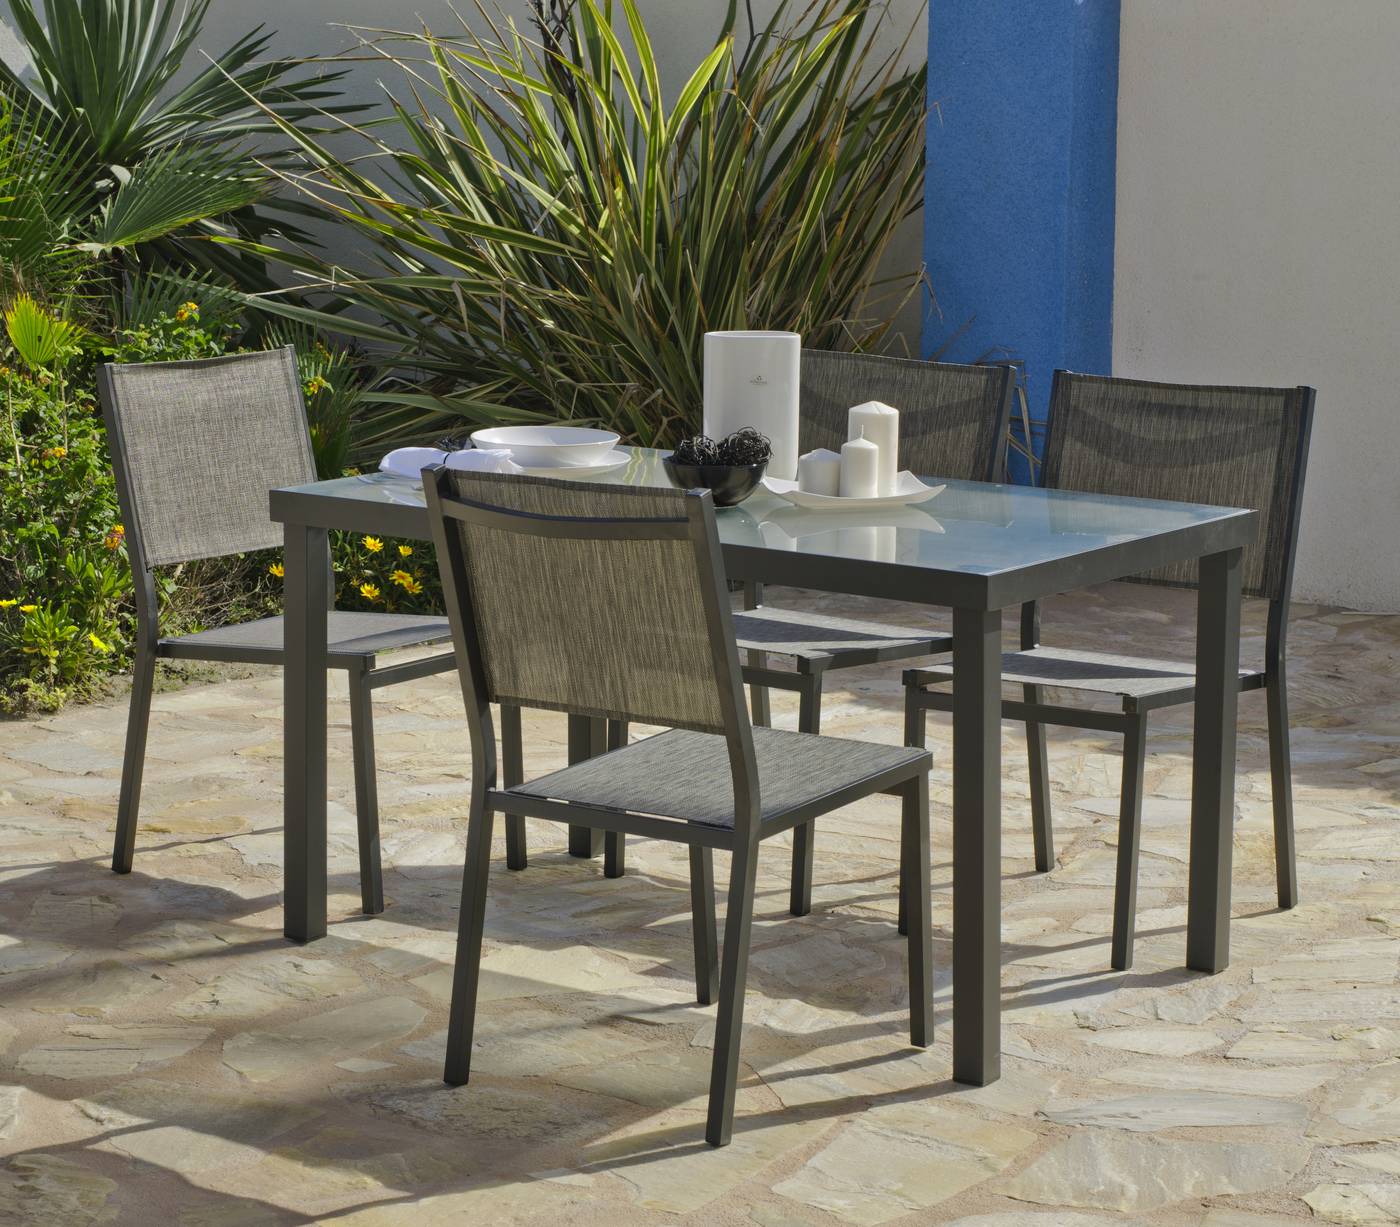 Conjunto de aluminio color antracita: mesa de 130 cm. + 4 sillas de aluminio y textilen